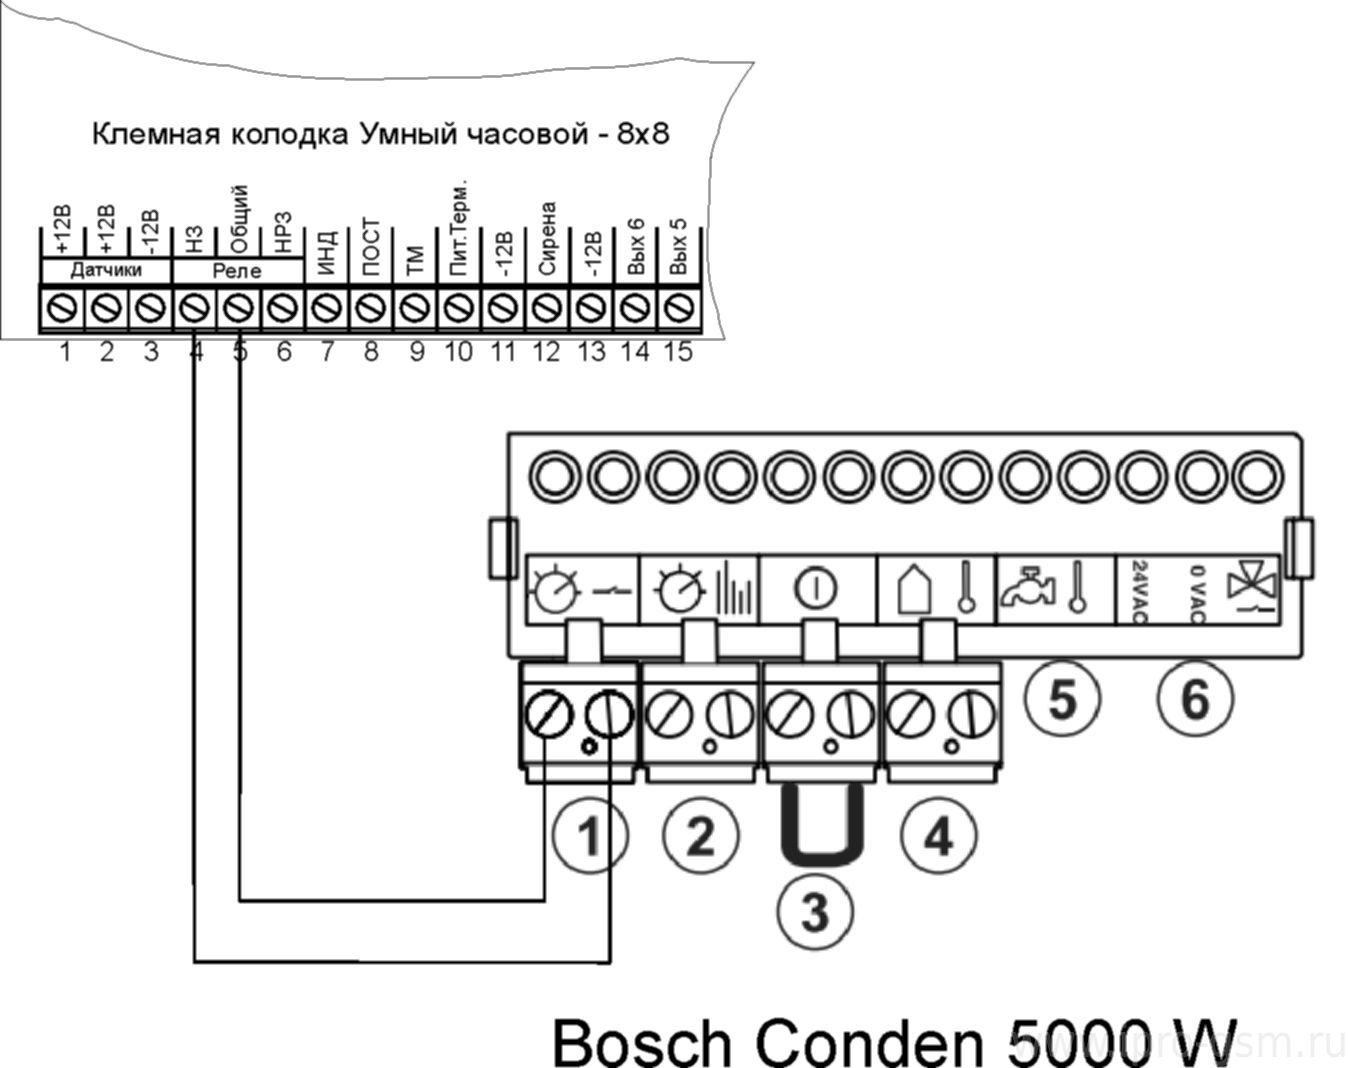 Схема подключения Часовой 8х8 к котлу Bosch Condens 5000 W